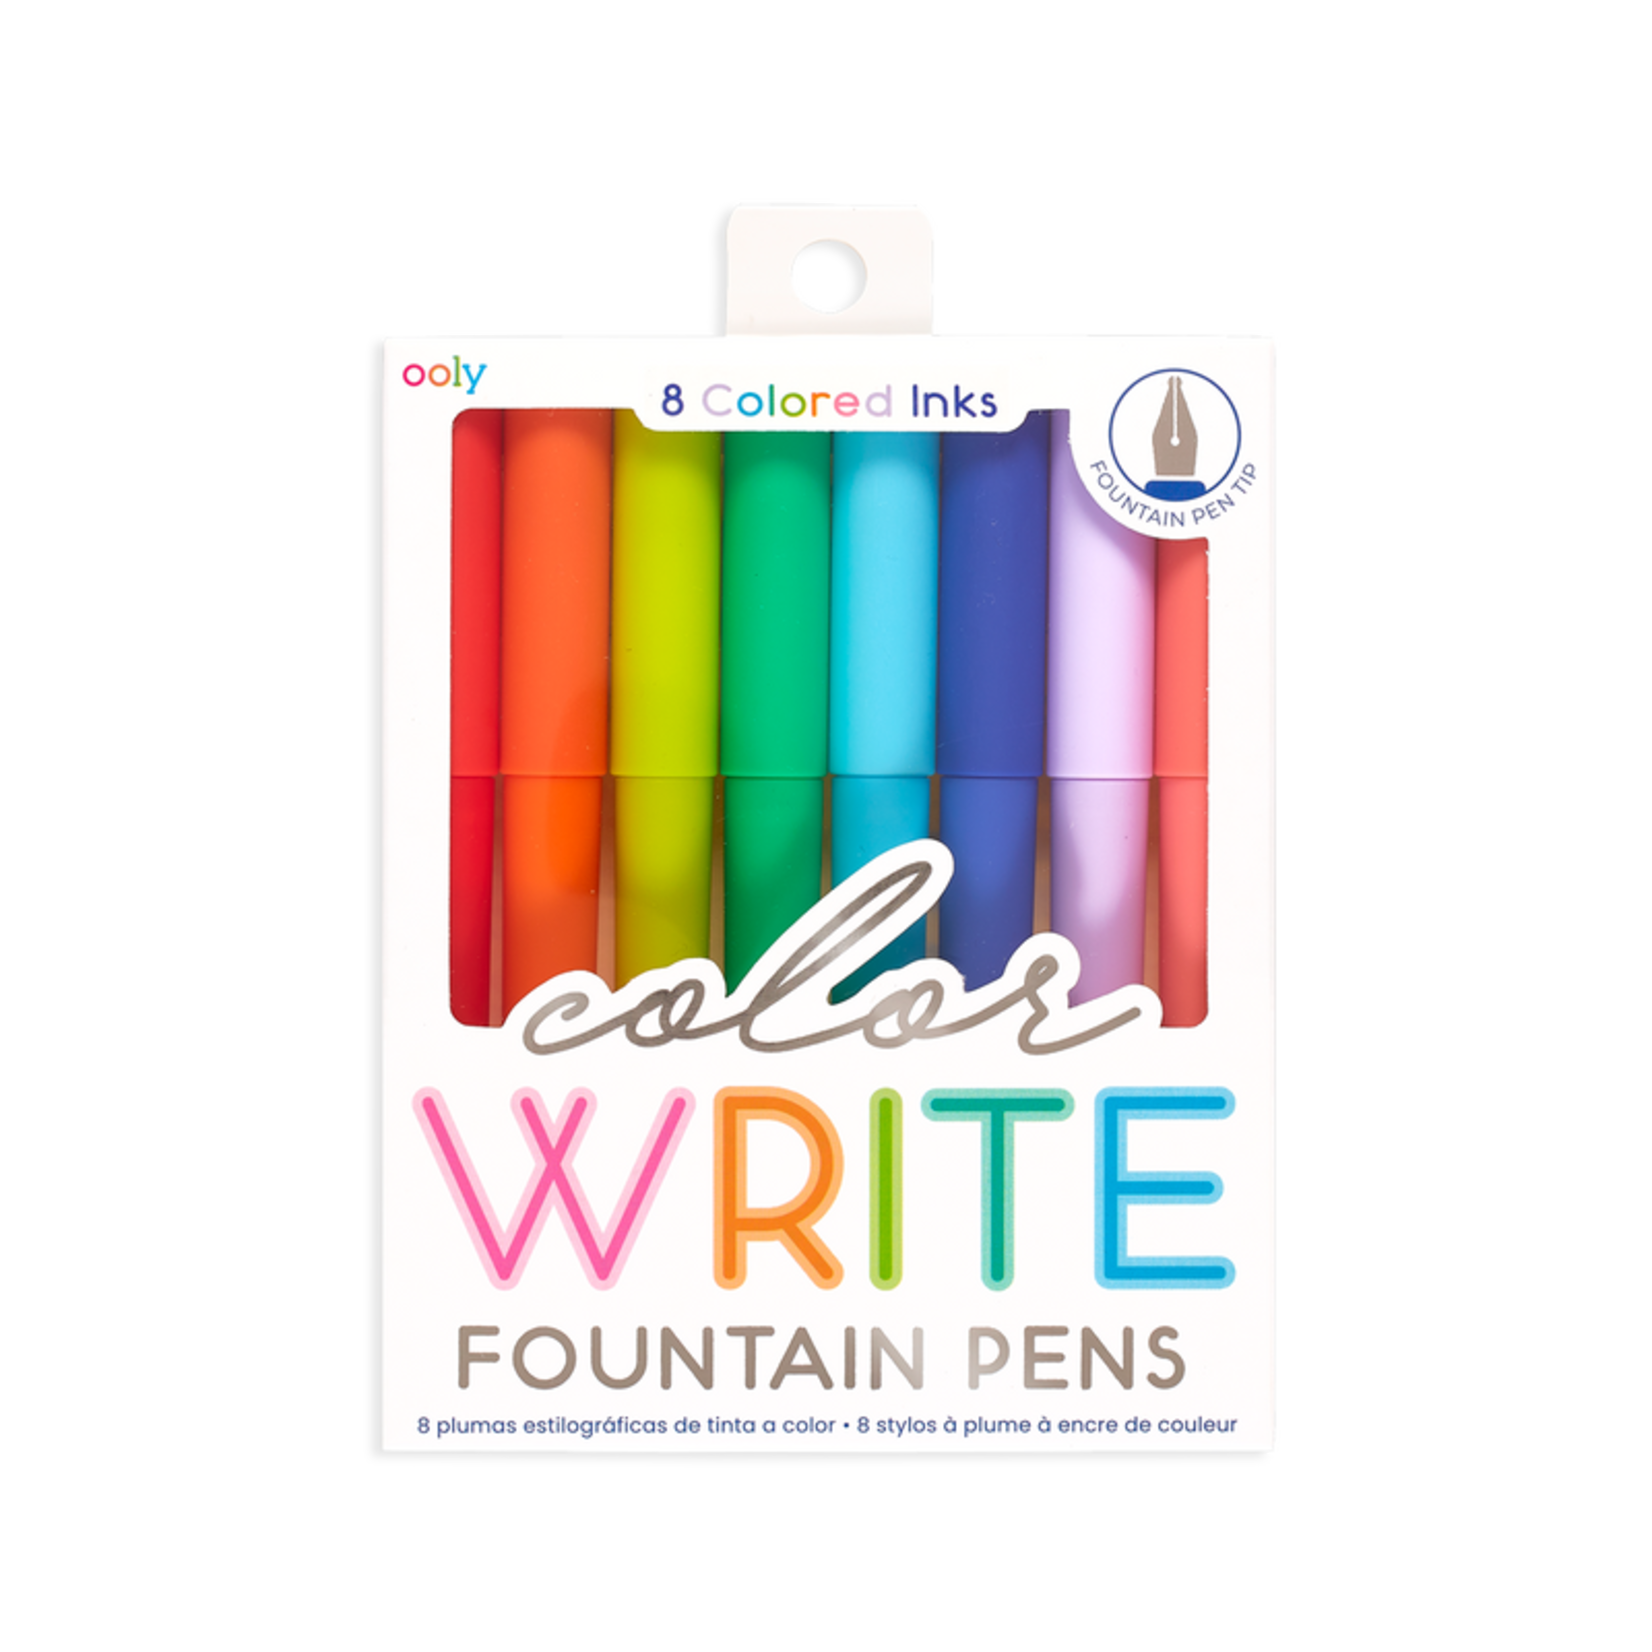  Color Pens